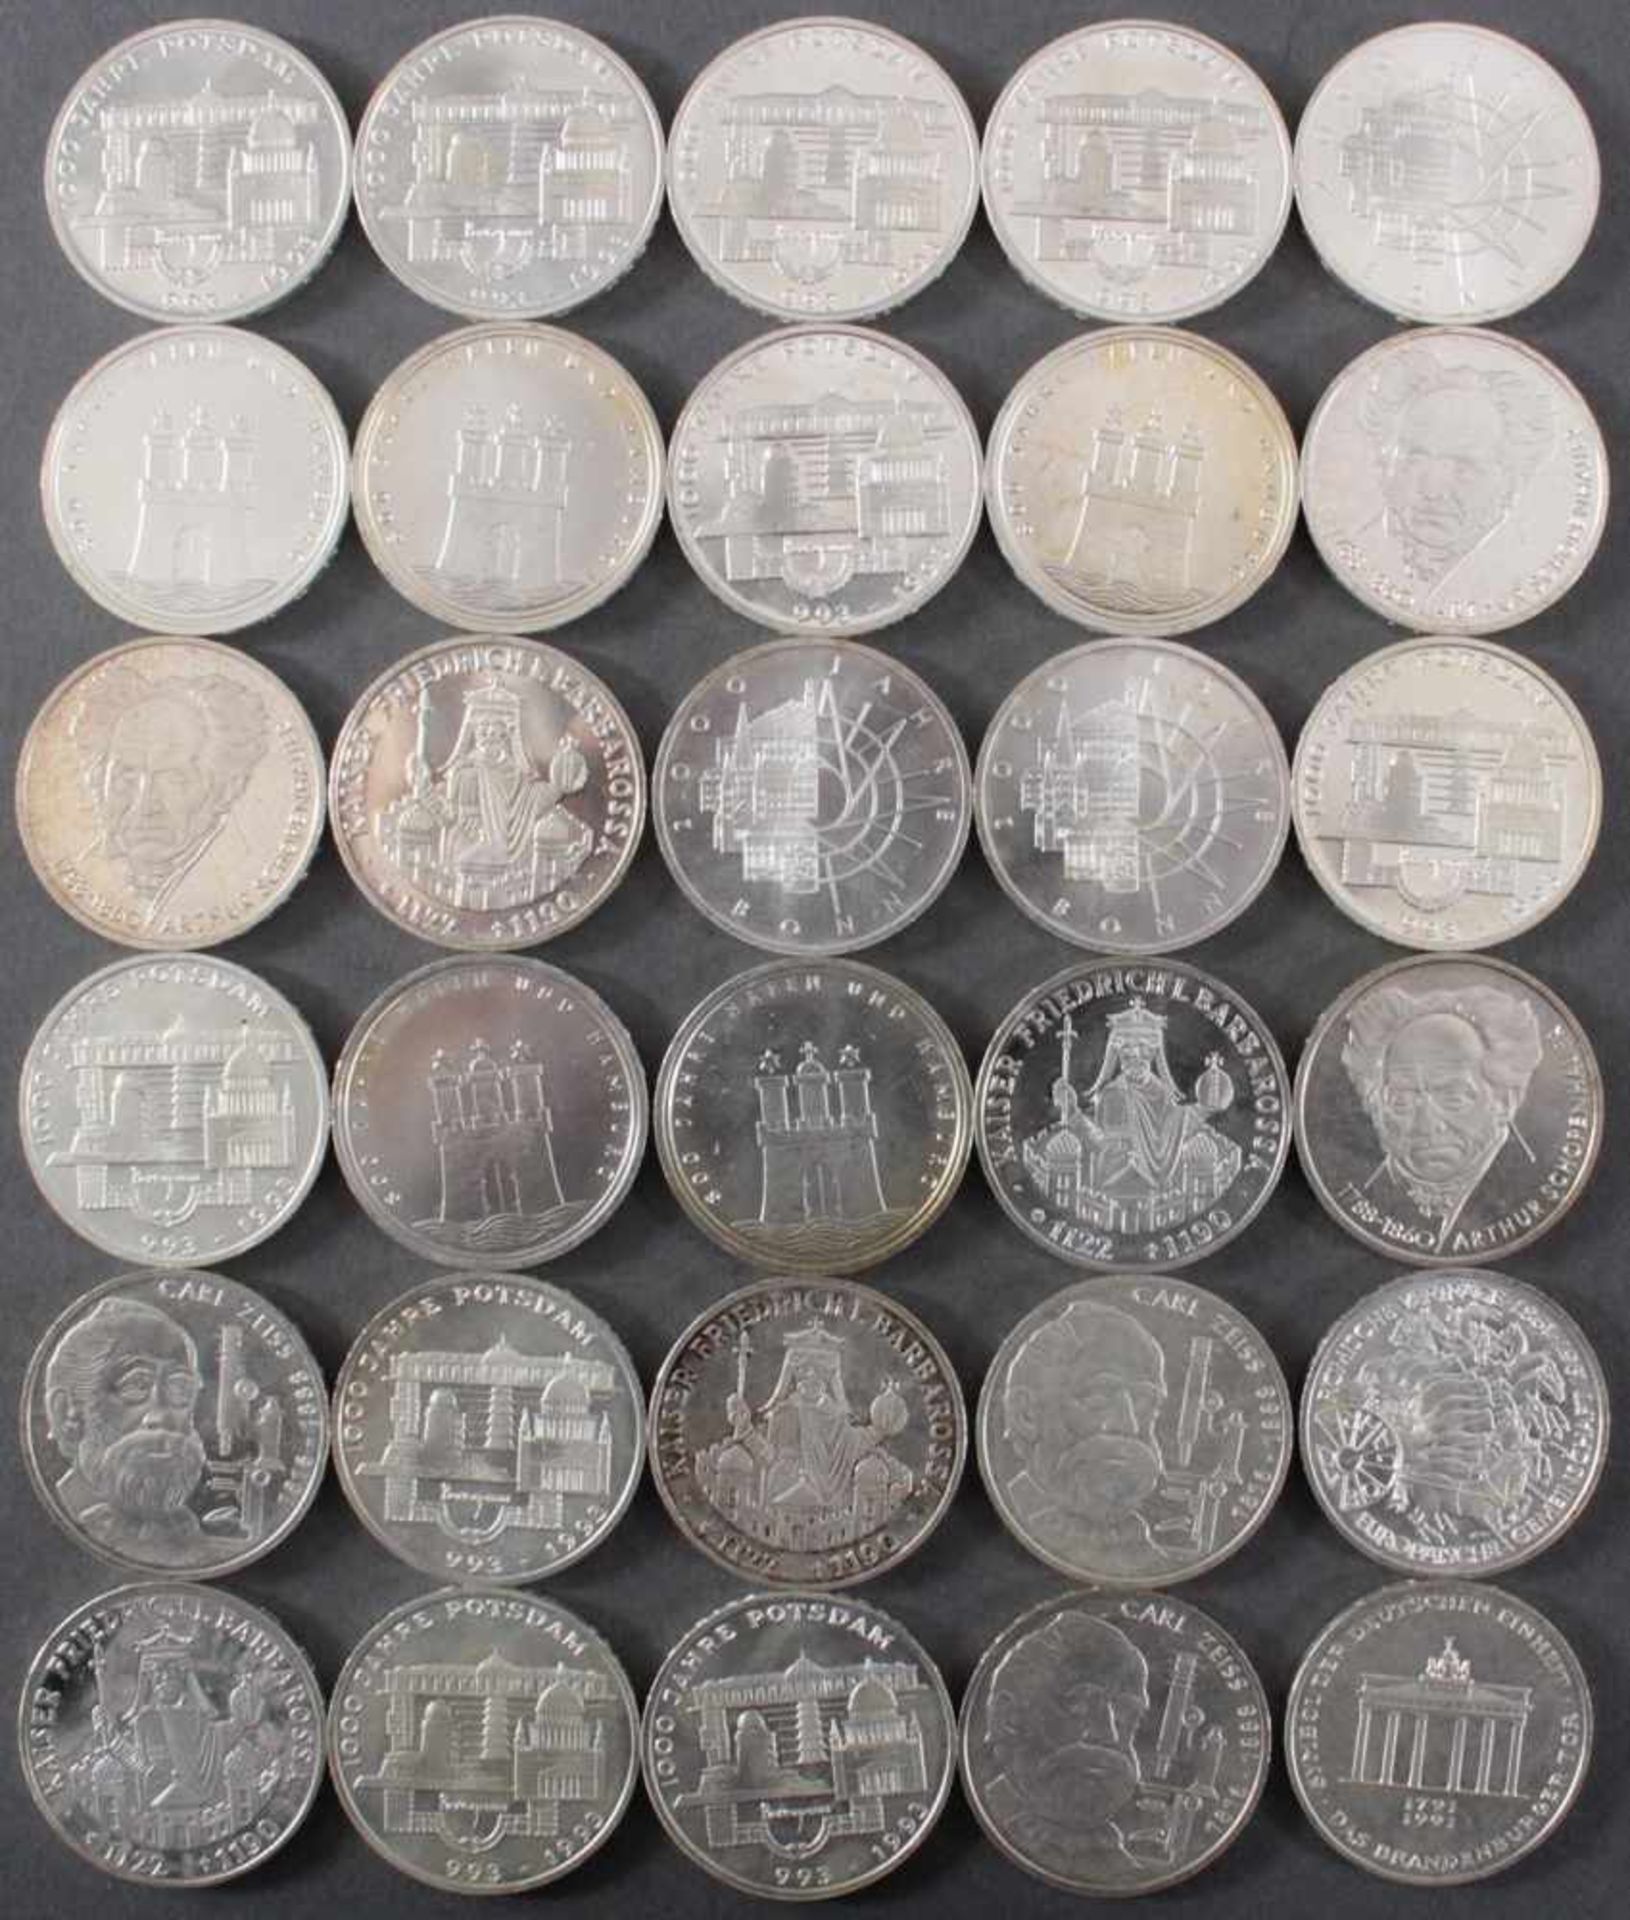 BRD, 10 DM Gedenkmünzen, 30 StückIn unterschiedlicher Erhaltung